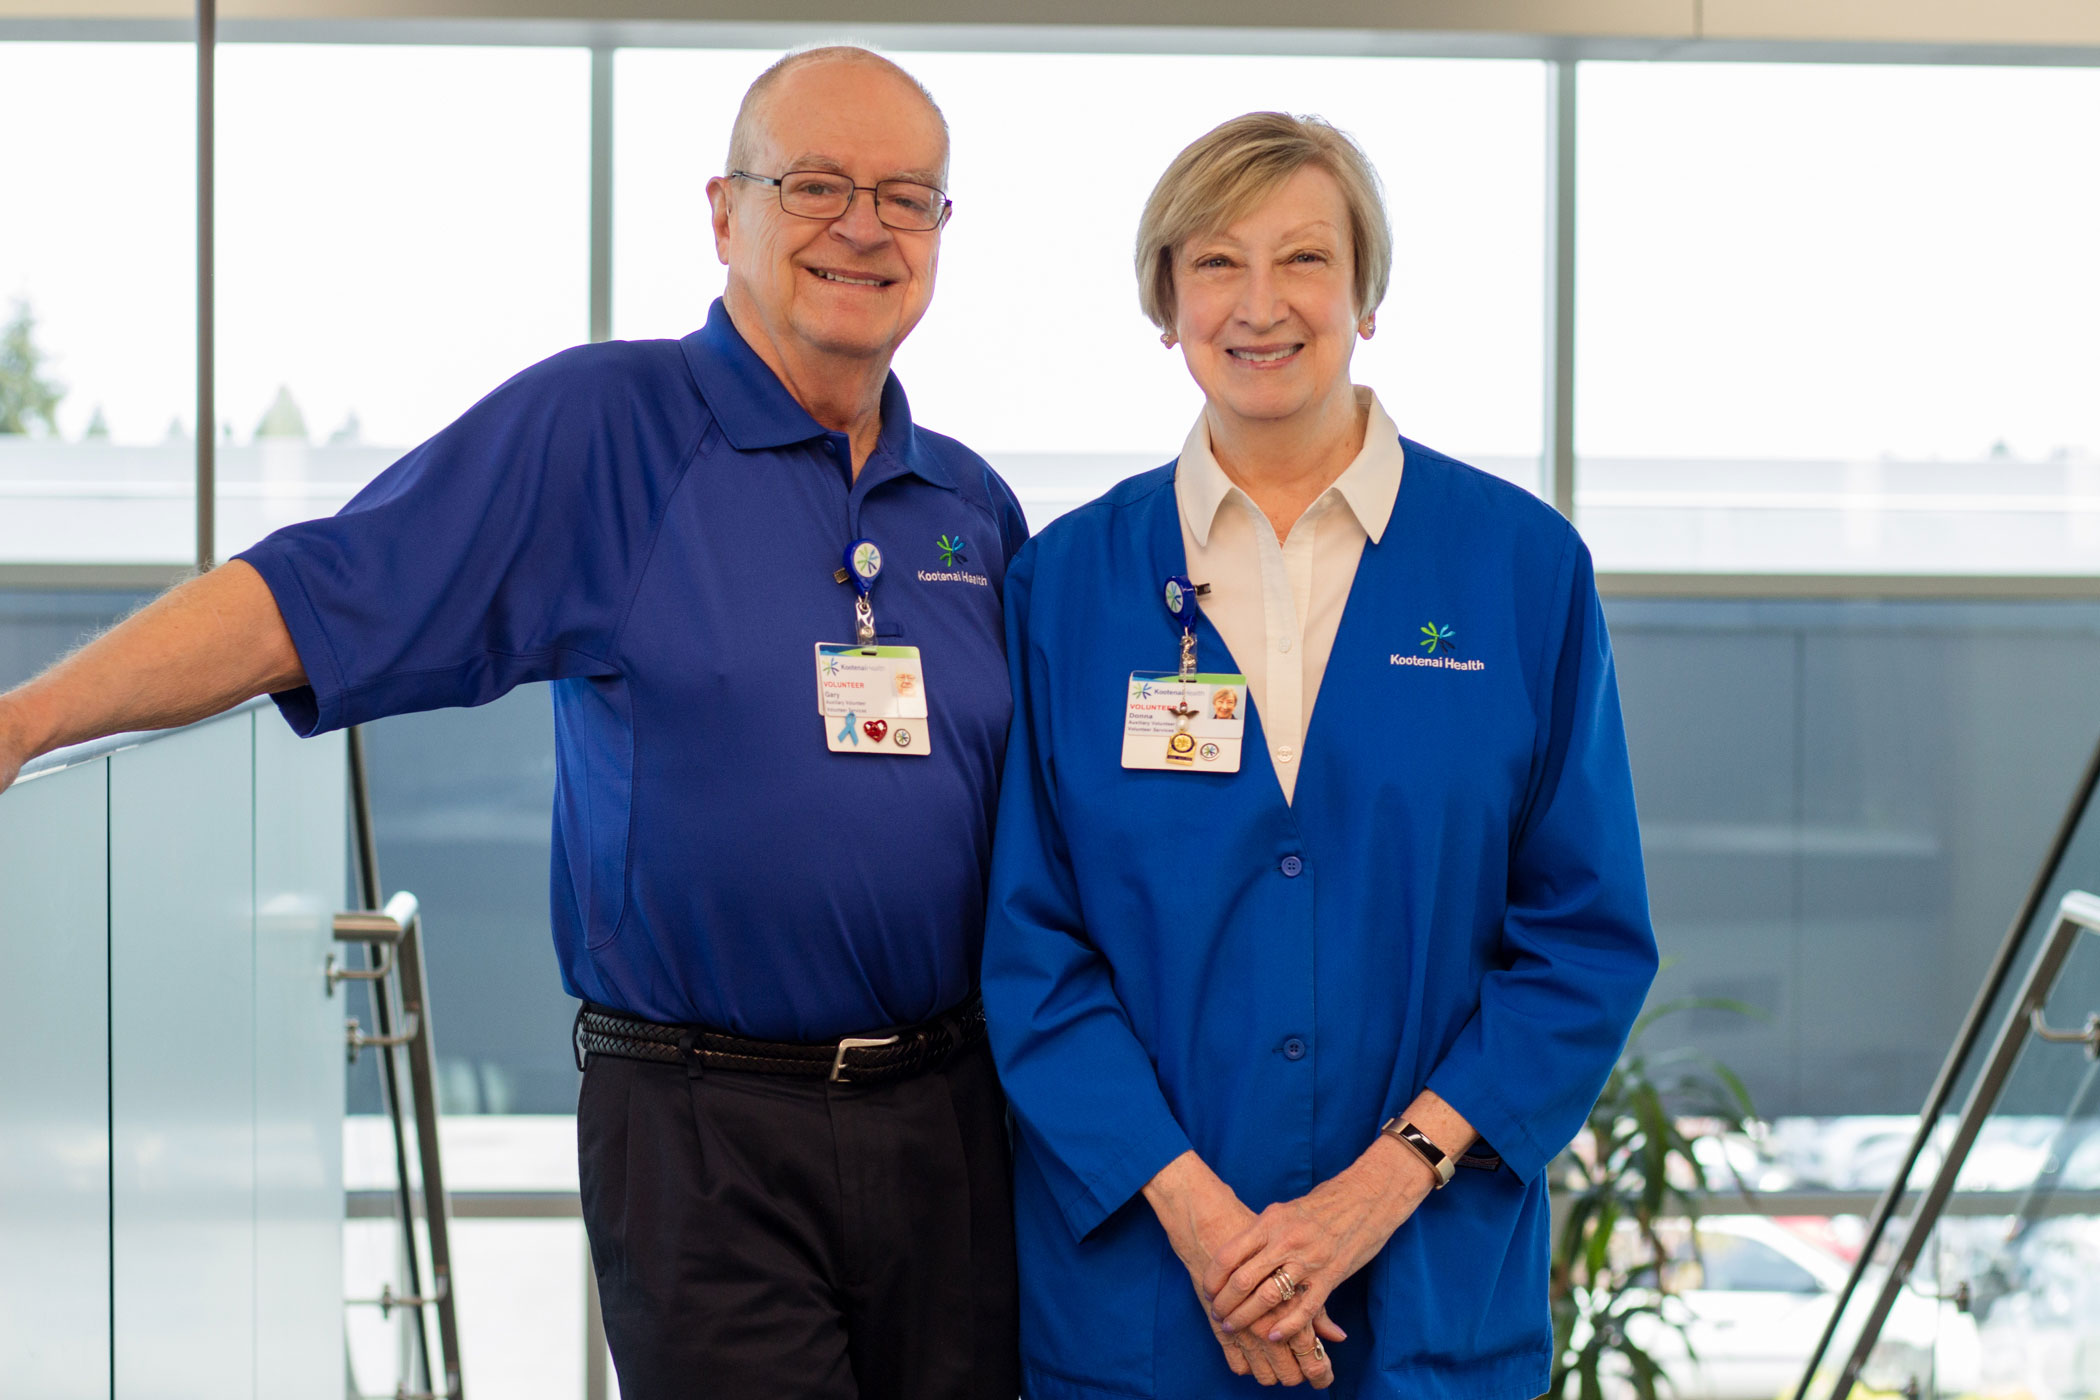 Gary and Donna Monroe volunteer at Kootenai Health